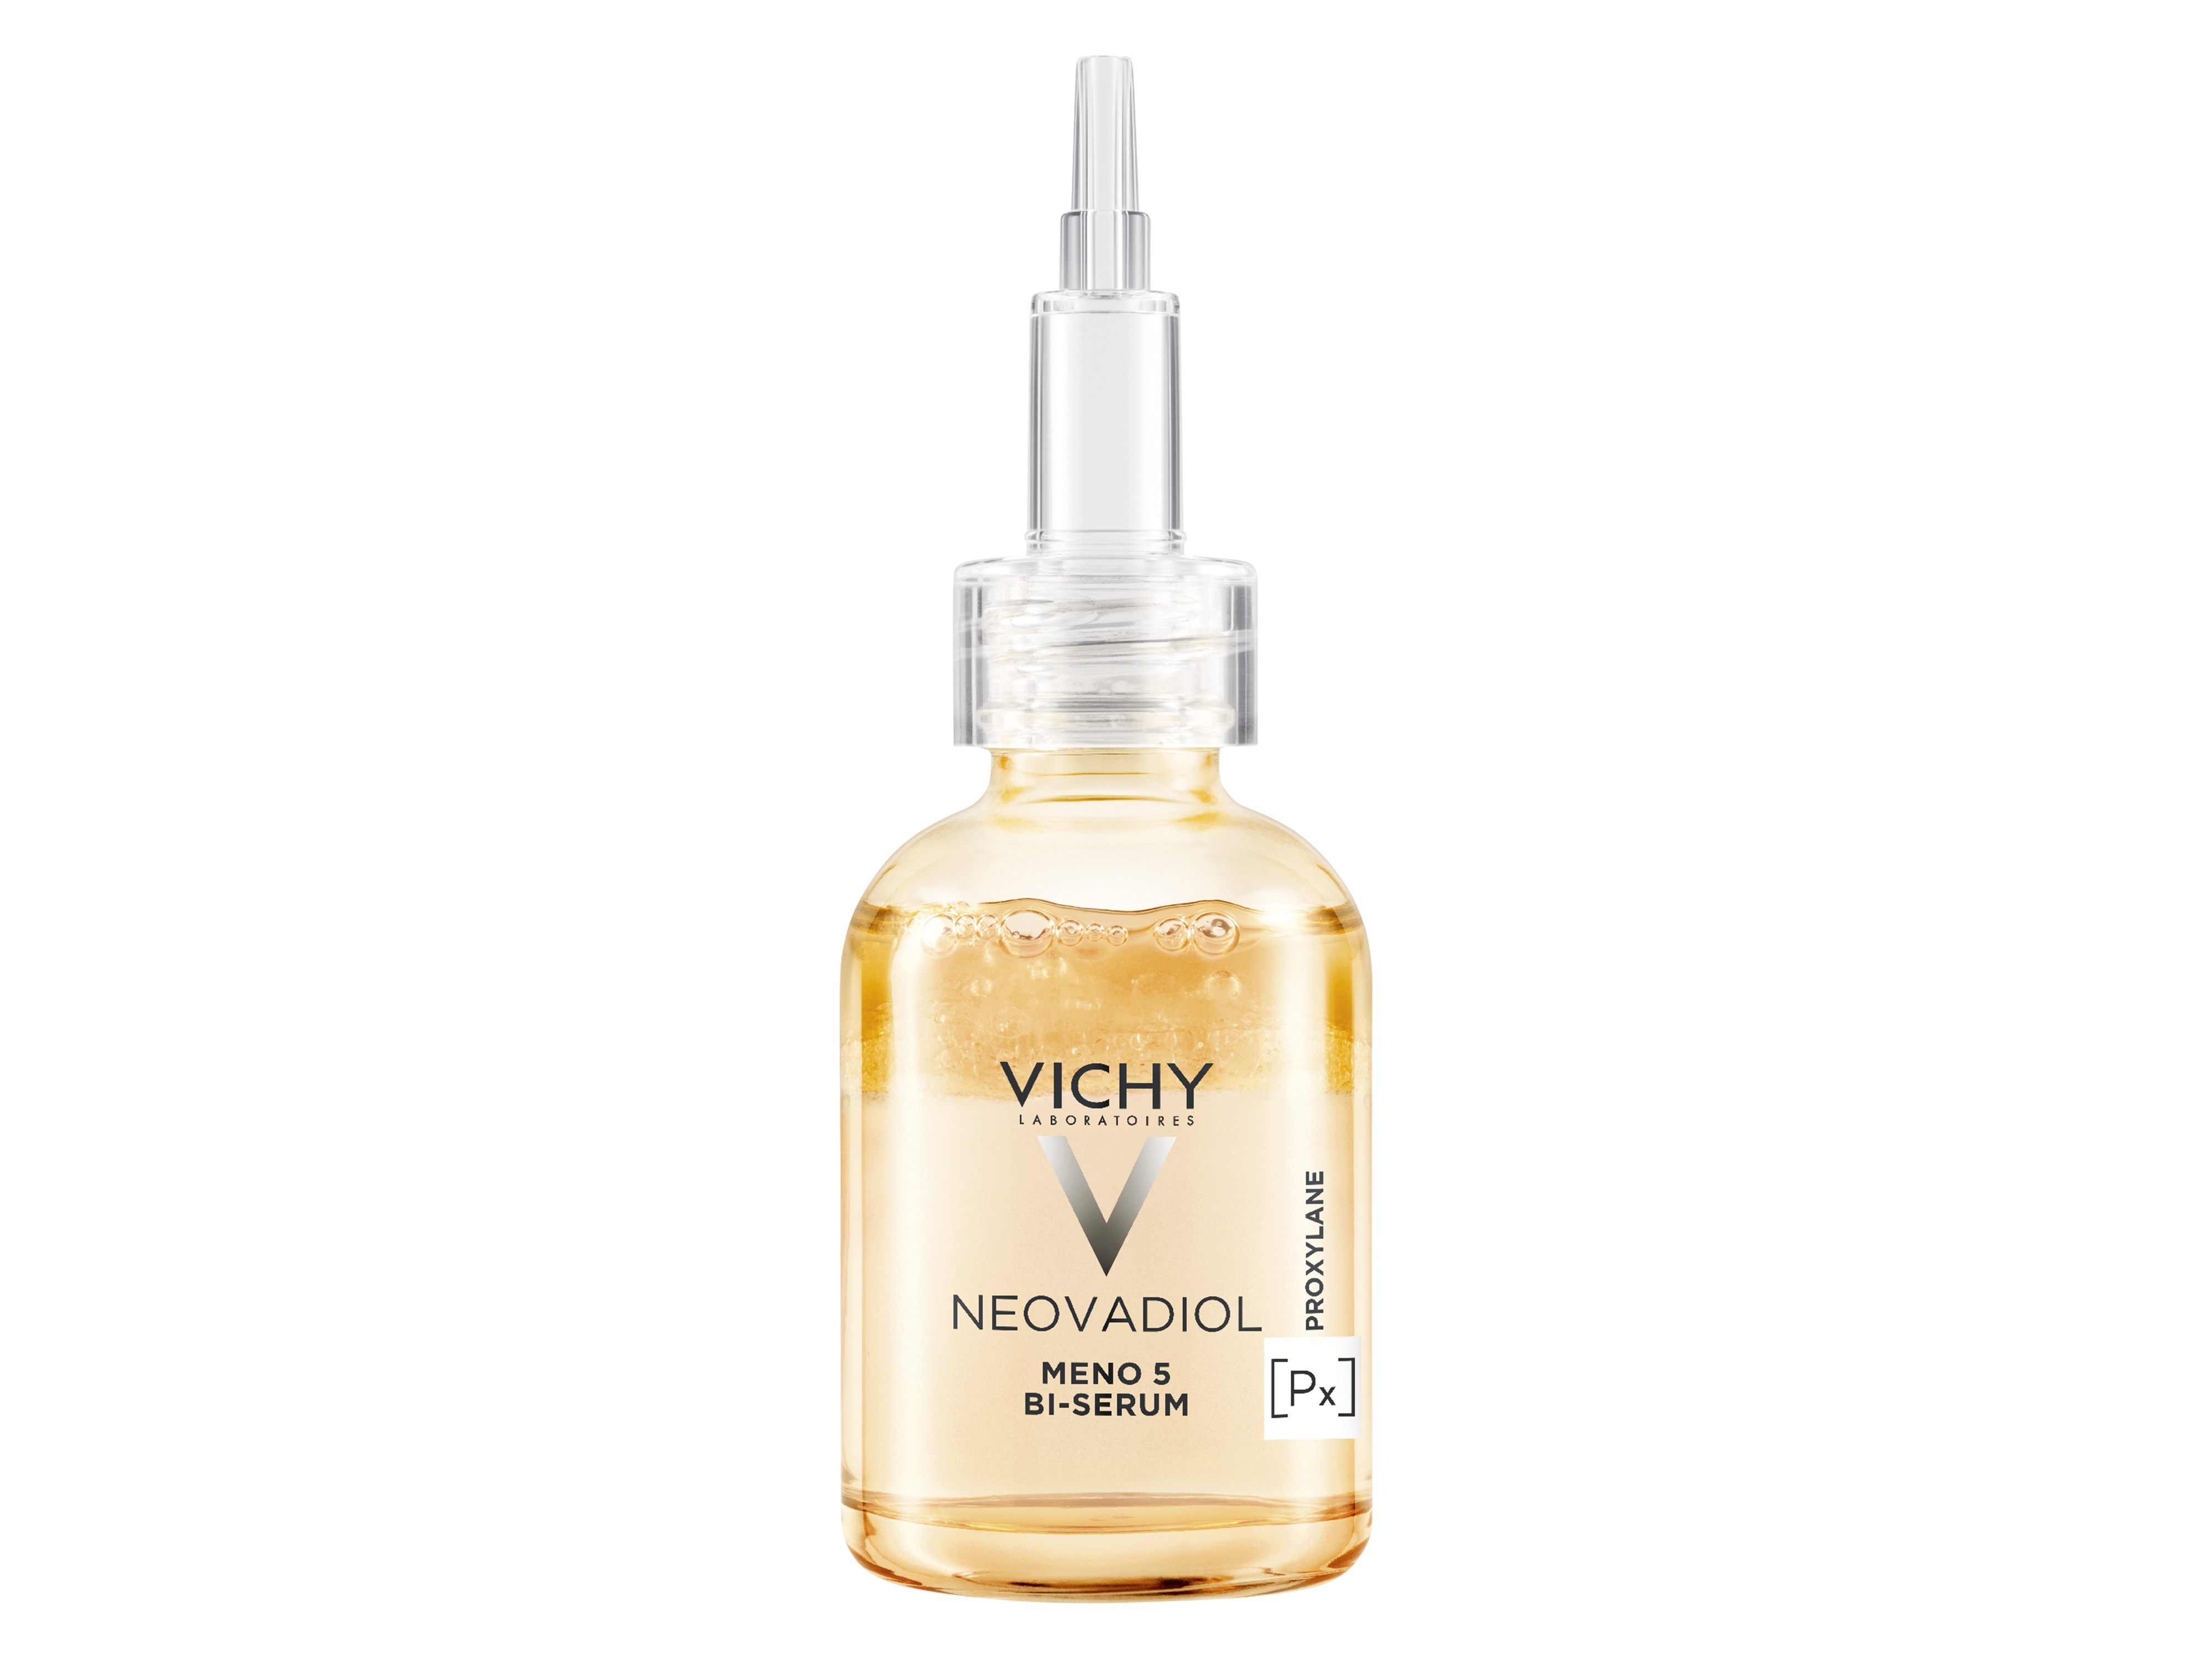 Vichy Neovadiol Meno 5 BI-Serum, 30 ml